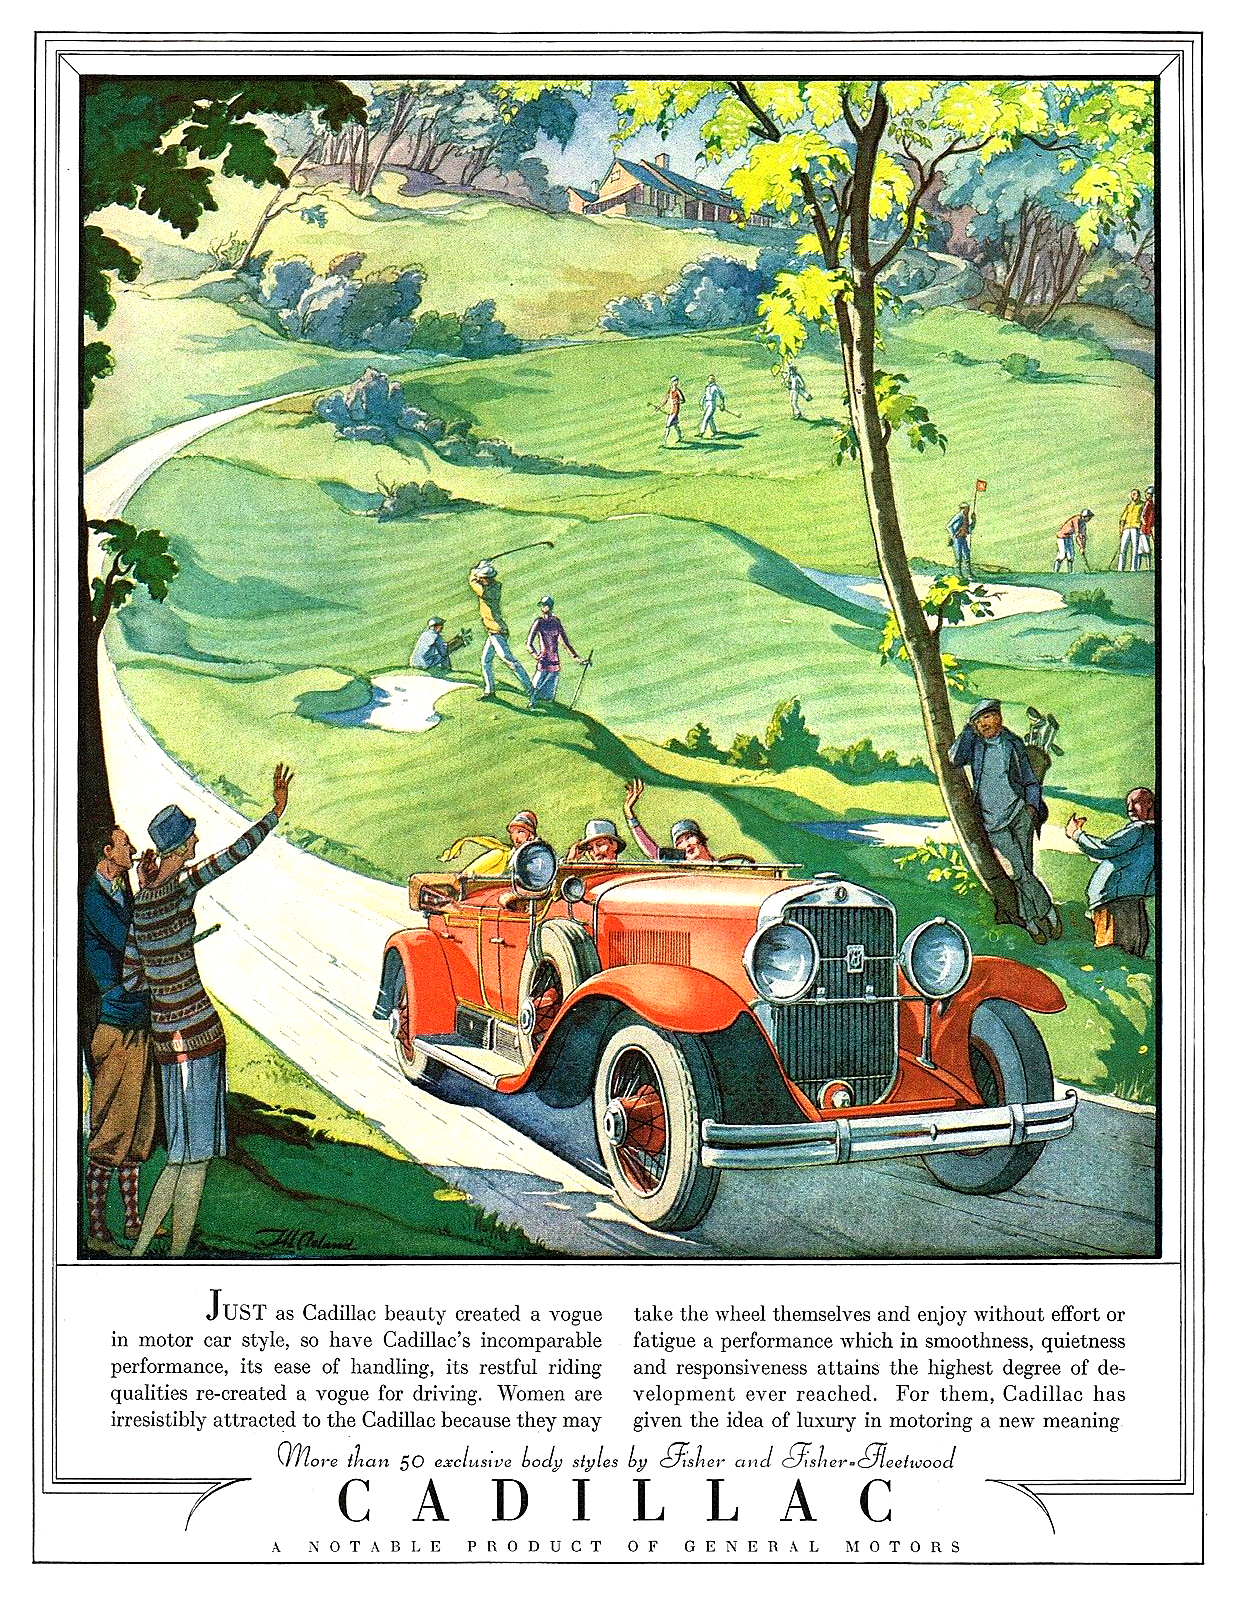 Cadillac Phaeton Ad (May-June, 1928): Illustrated by Thomas M. Cleland